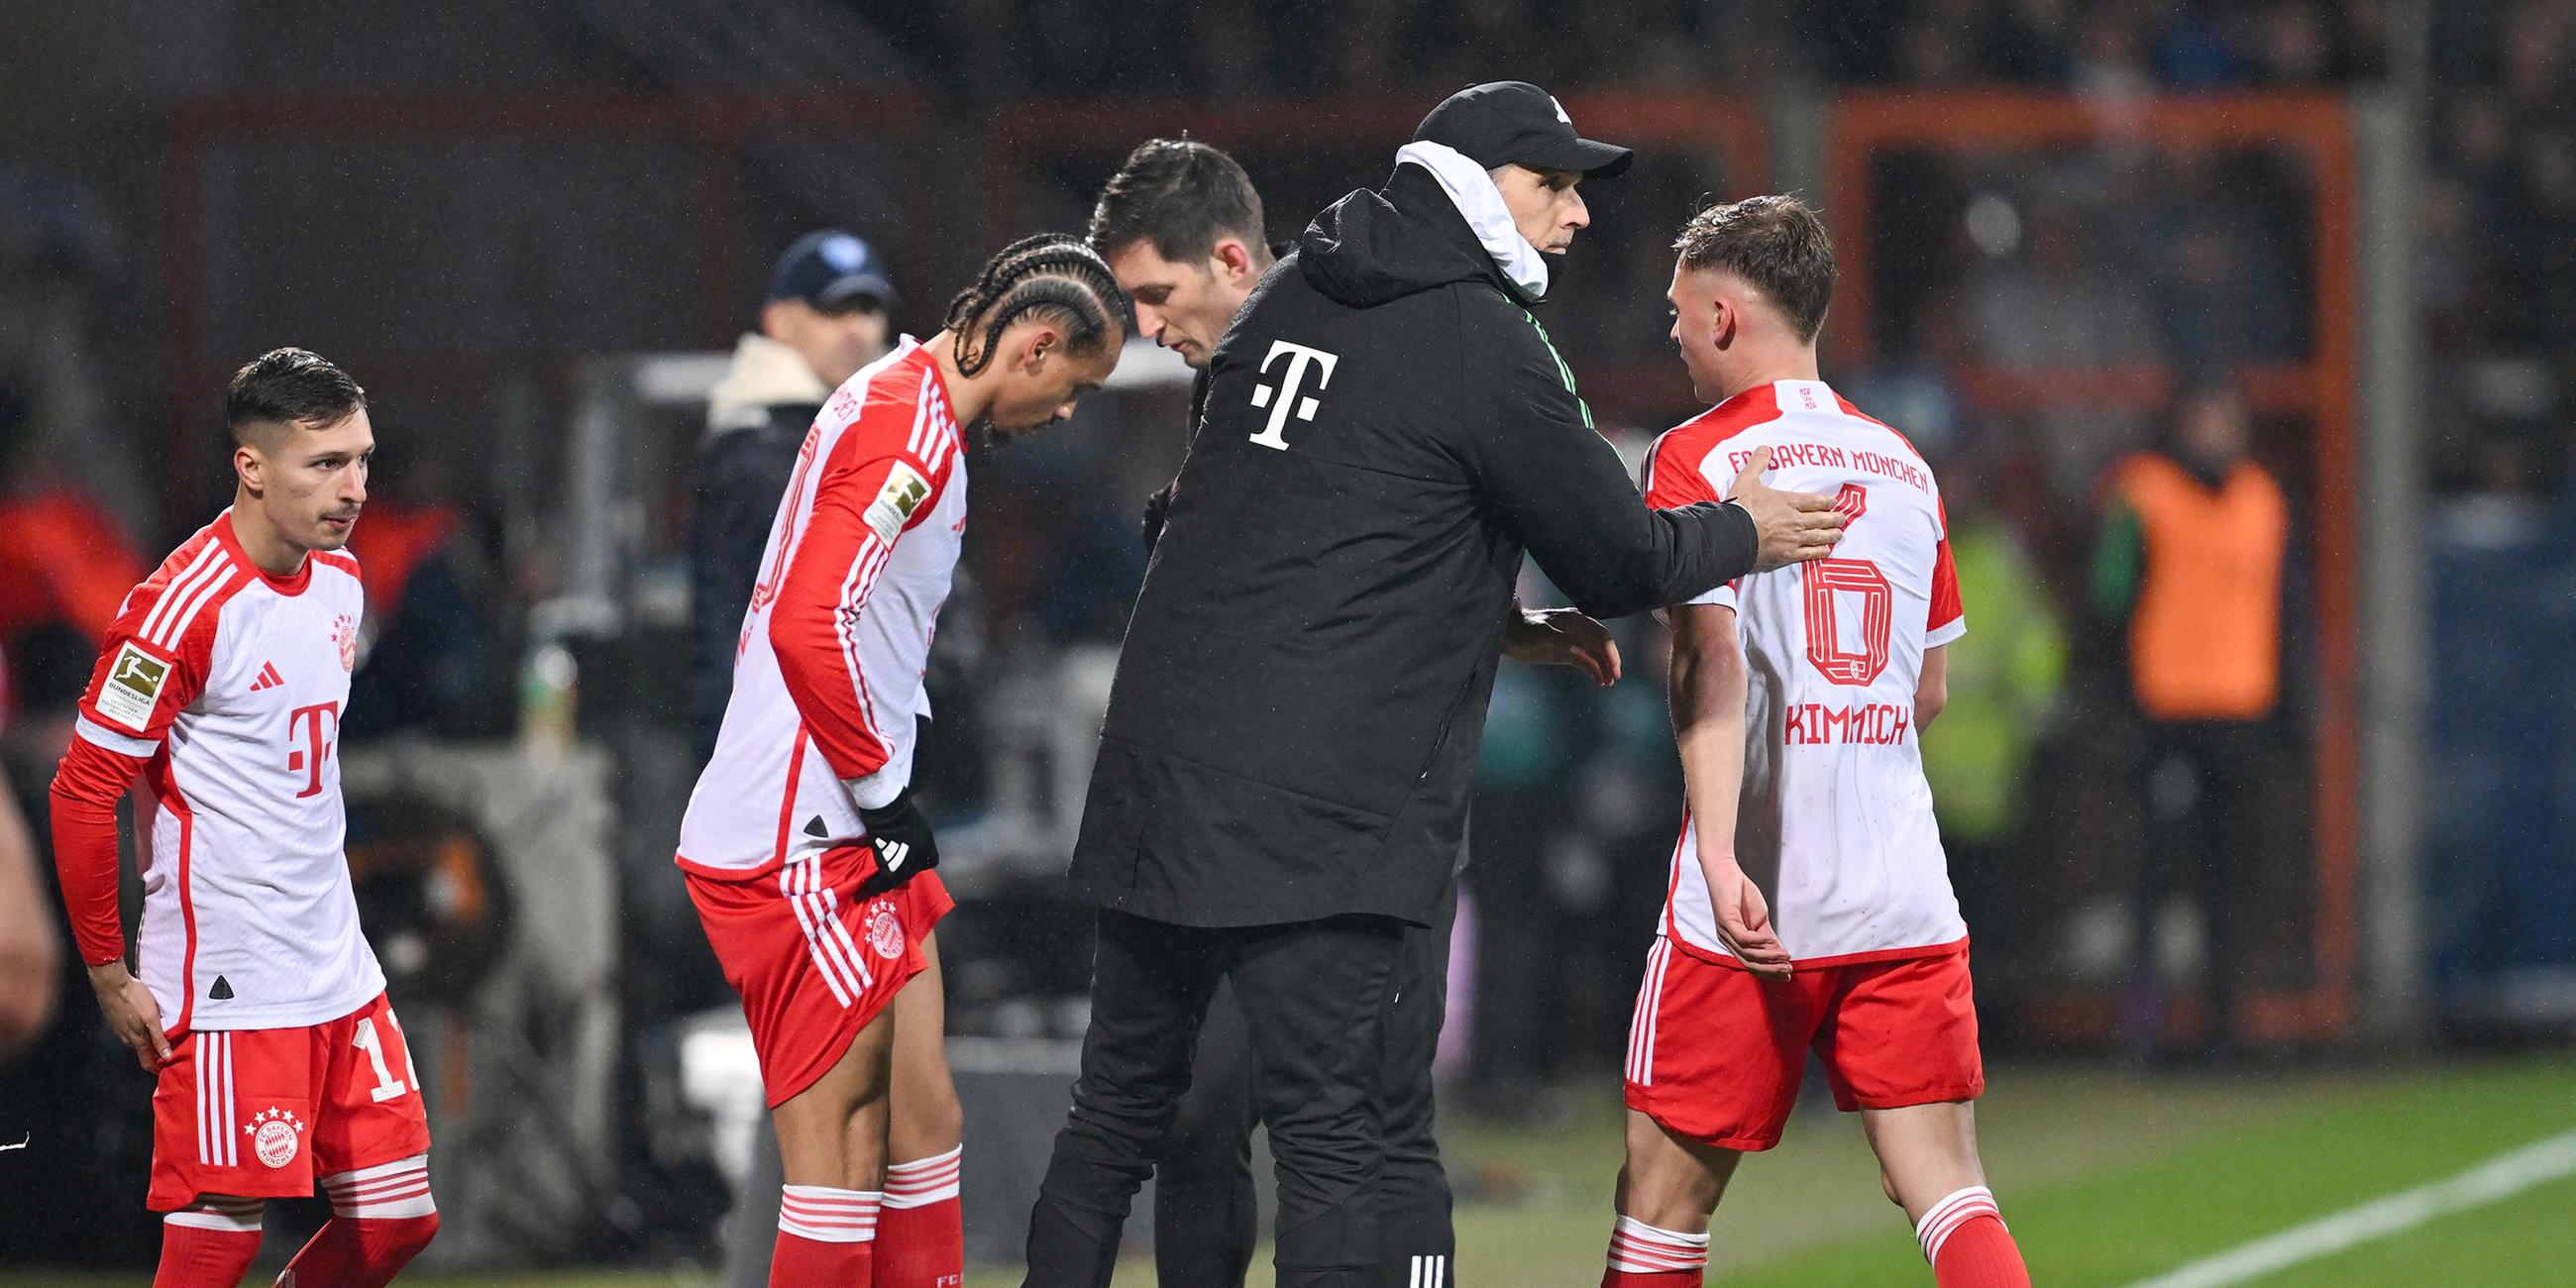 Münchens Cheftrainer Thomas Tuchel klopft seinem Spieler Joshua Kimmich während der Auswechslung auf die Schulter.